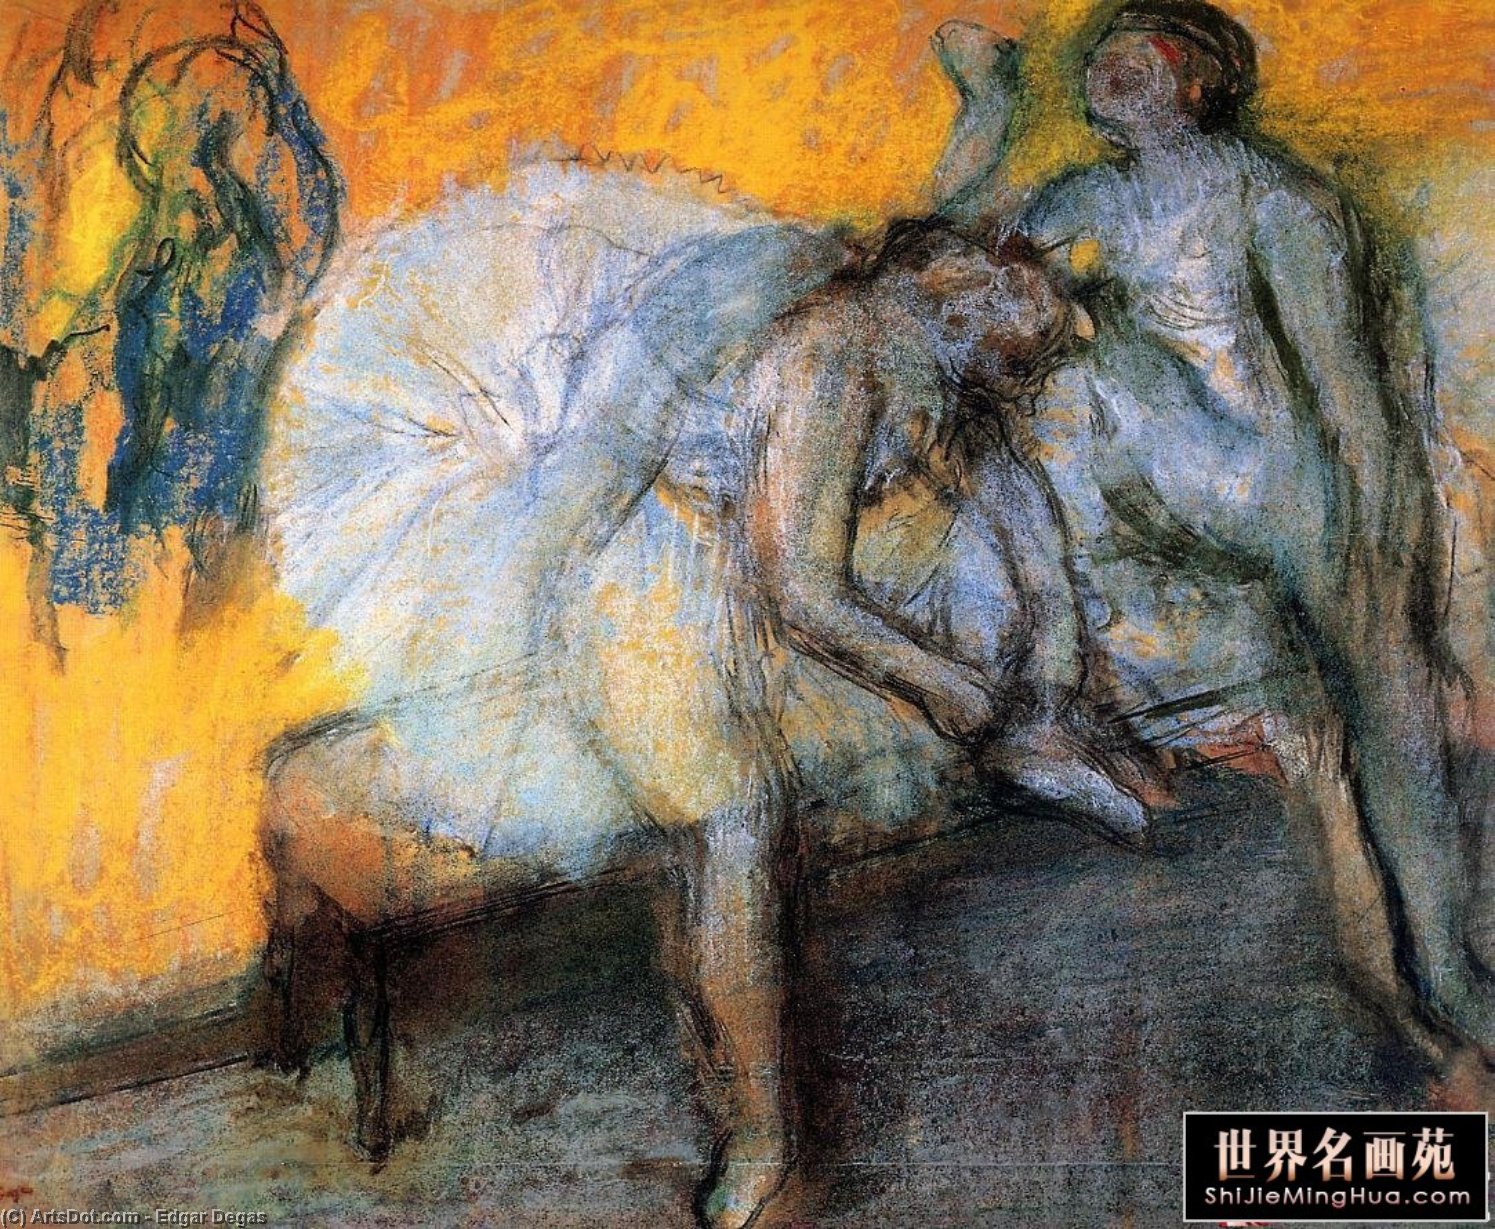 WikiOO.org - Энциклопедия изобразительного искусства - Живопись, Картины  Edgar Degas - Две танцовщицы отдыха